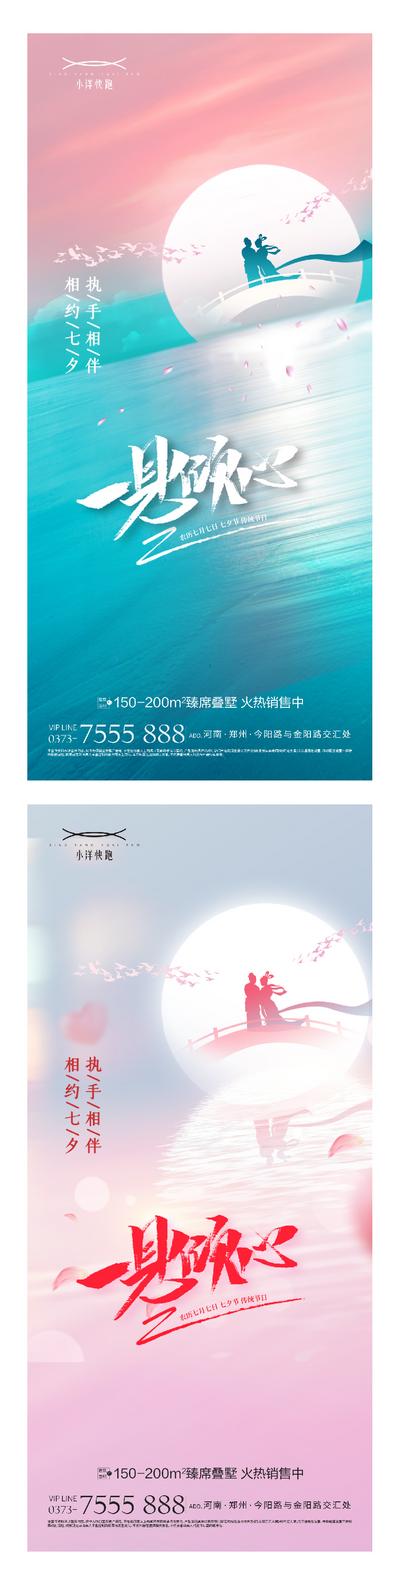 南门网 海报 地产 中国传统节日 七夕 情人节 牛郎织女 情侣 甜蜜 喜鹊 鹊桥 系列